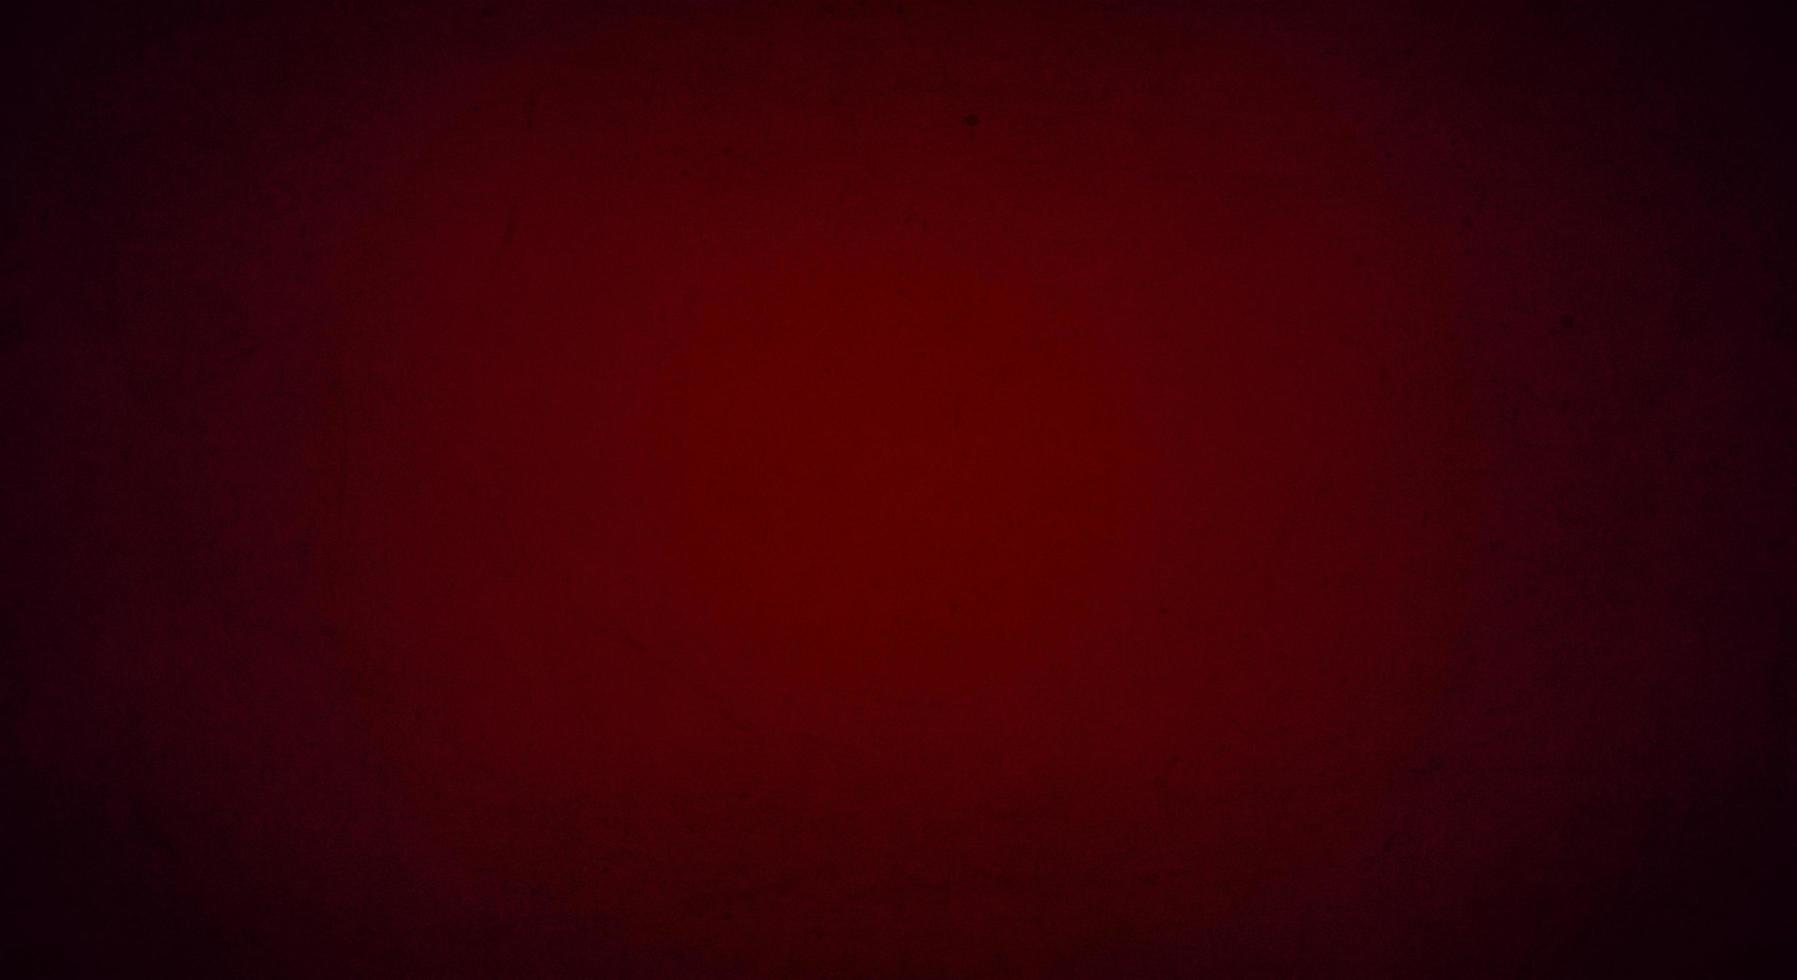 sfondo grunge rosso porpora con bordo chiaro e scuro morbido, vecchio sfondo vintage foto